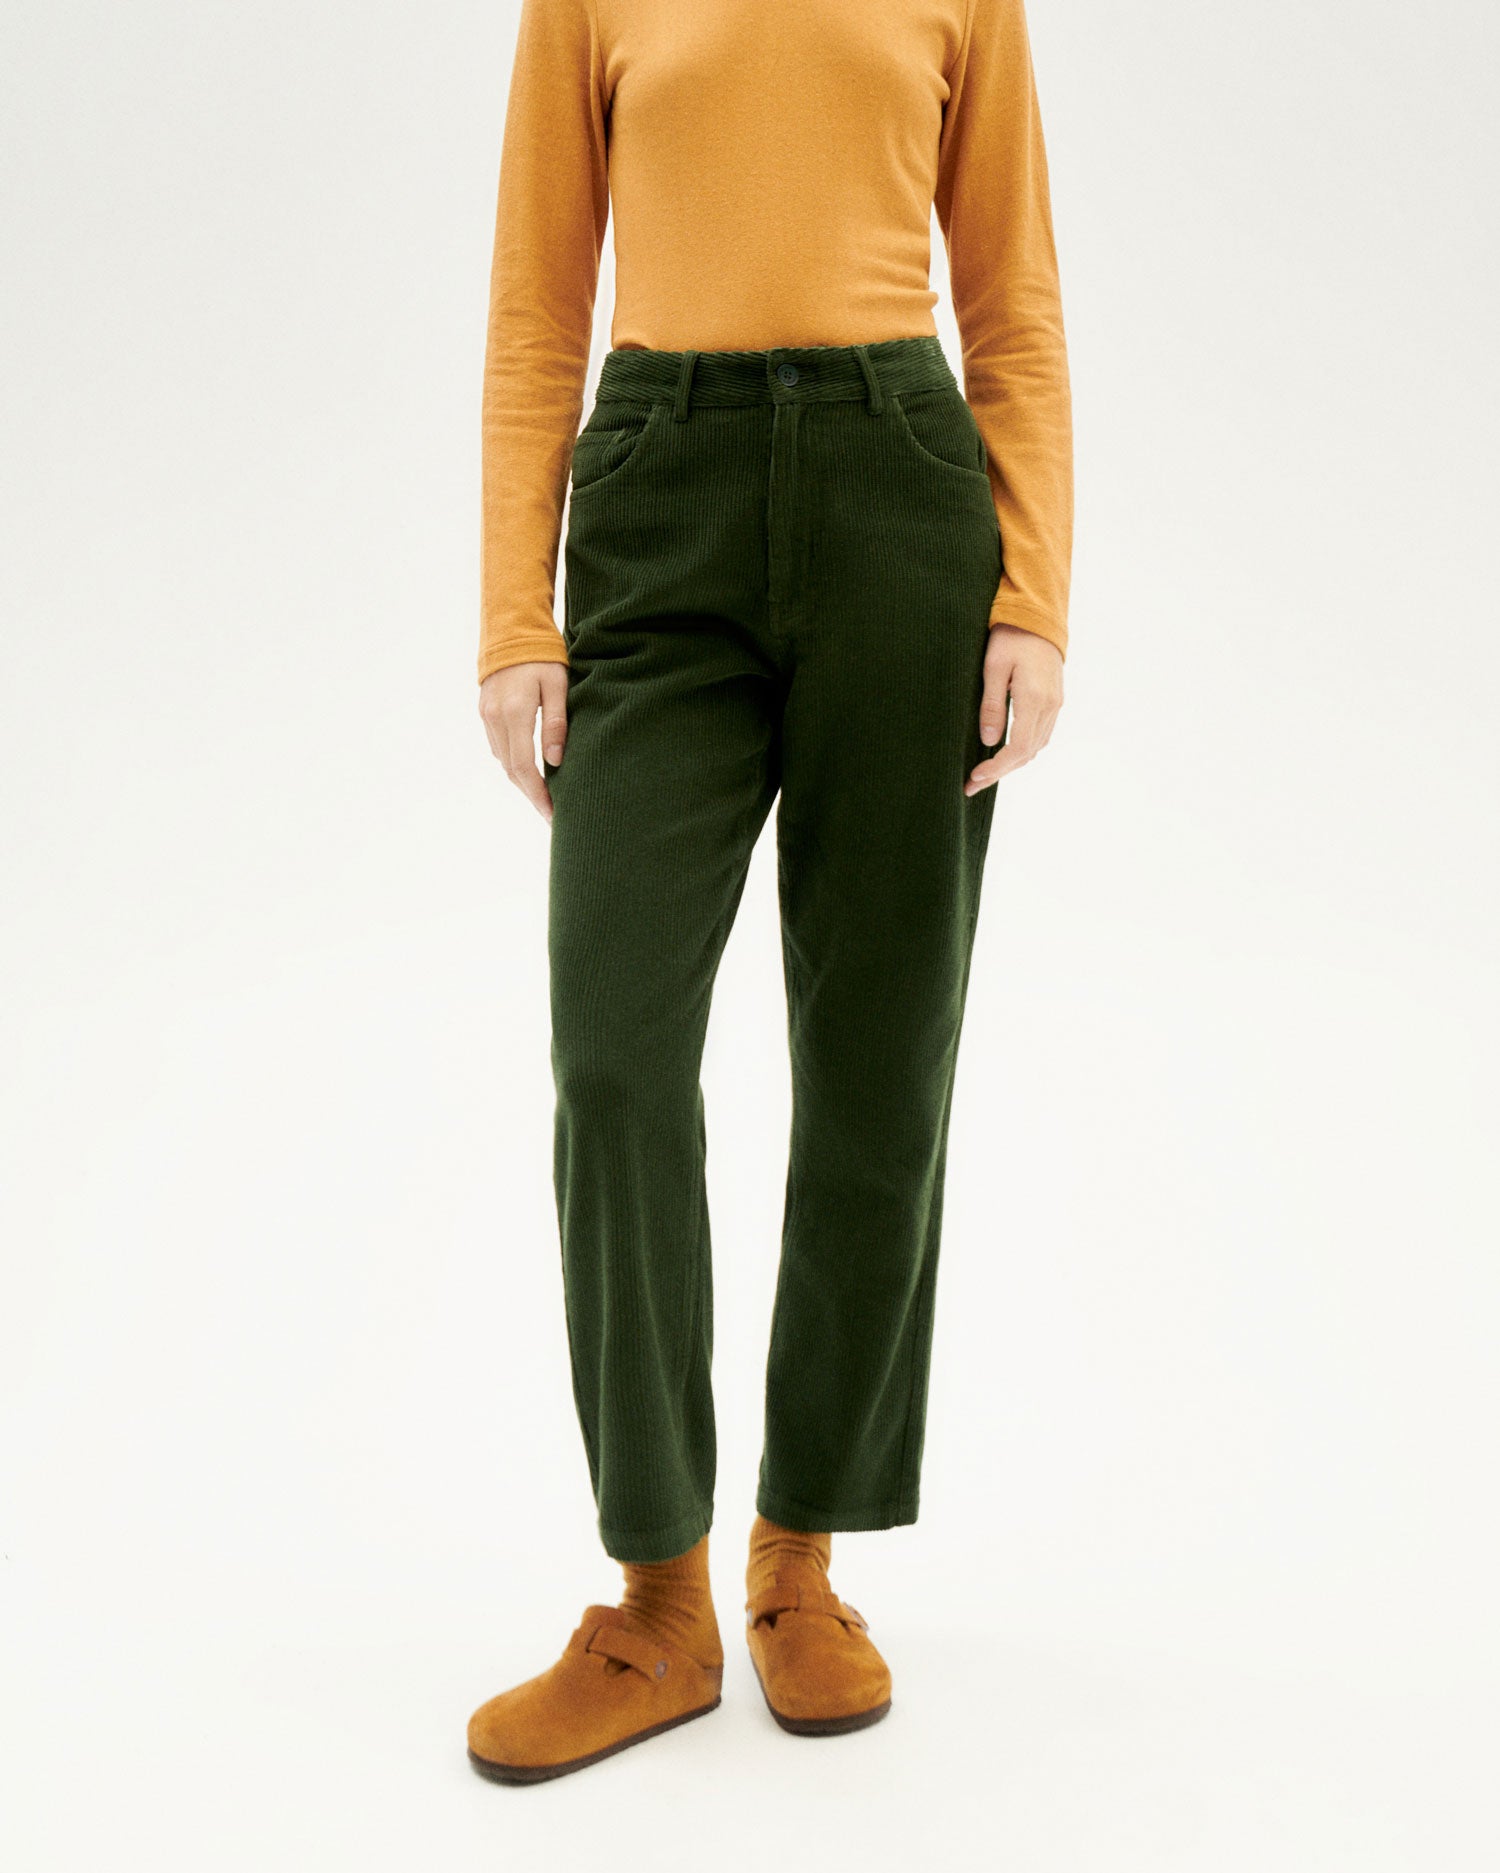 Corduroy green pants Nele organic cotton woman | Thinking MU